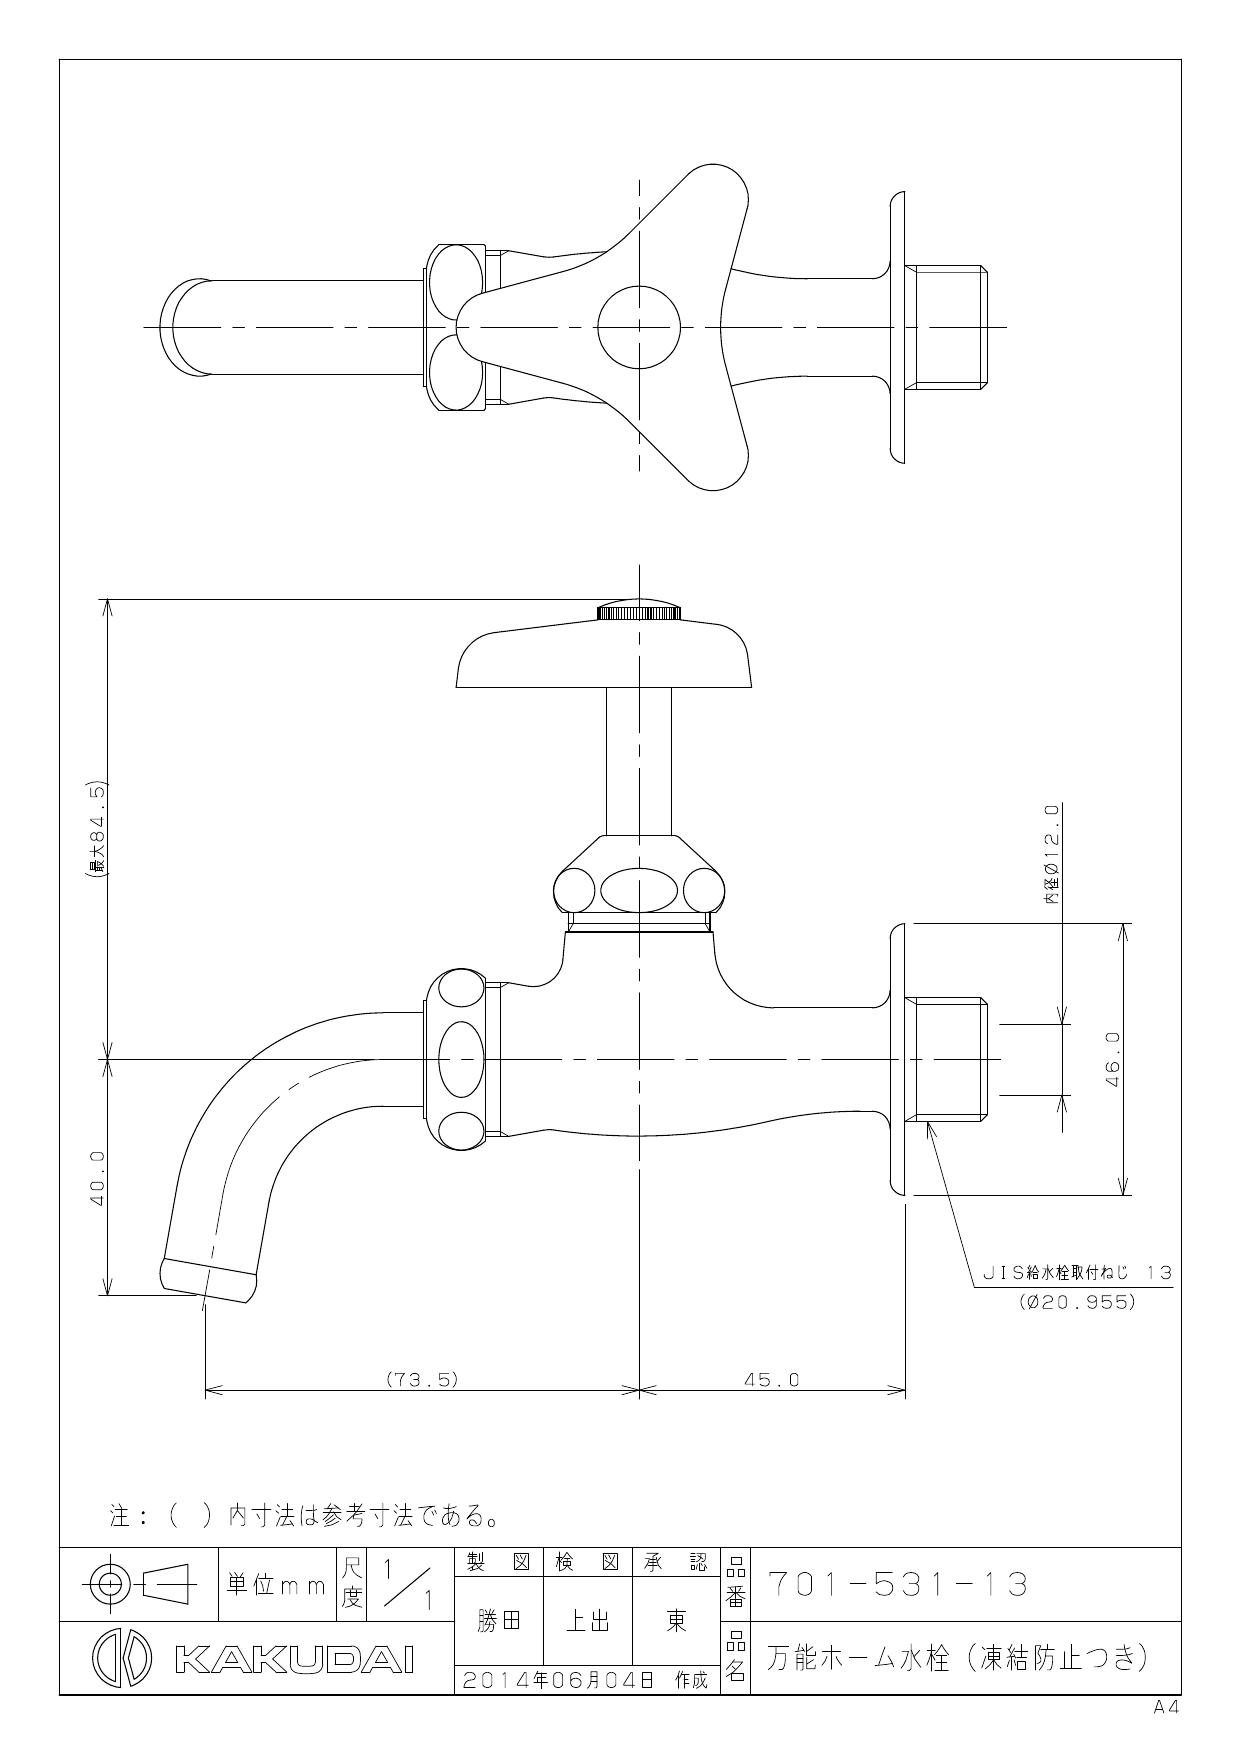 カクダイ 721-242 井戸ポンプ型水栓(トール) - 4